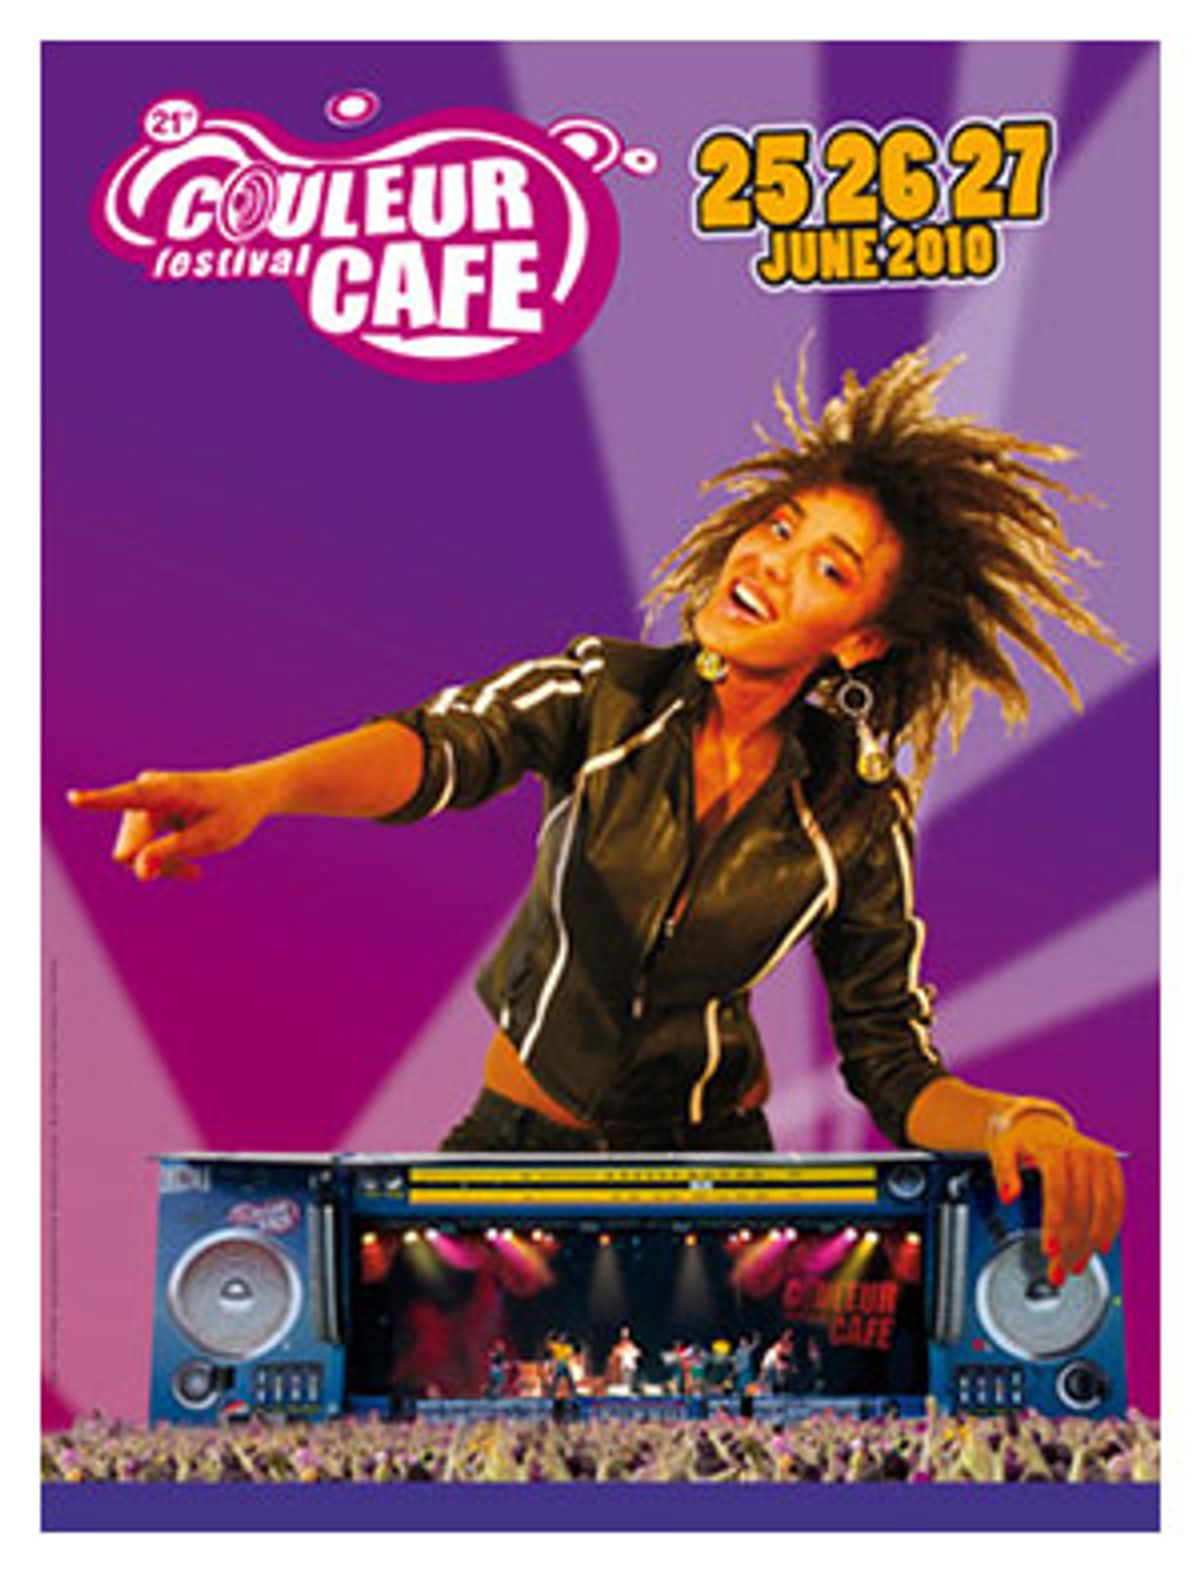 Couleur Café 2010: zwarte parels in een kleurrijke omgeving